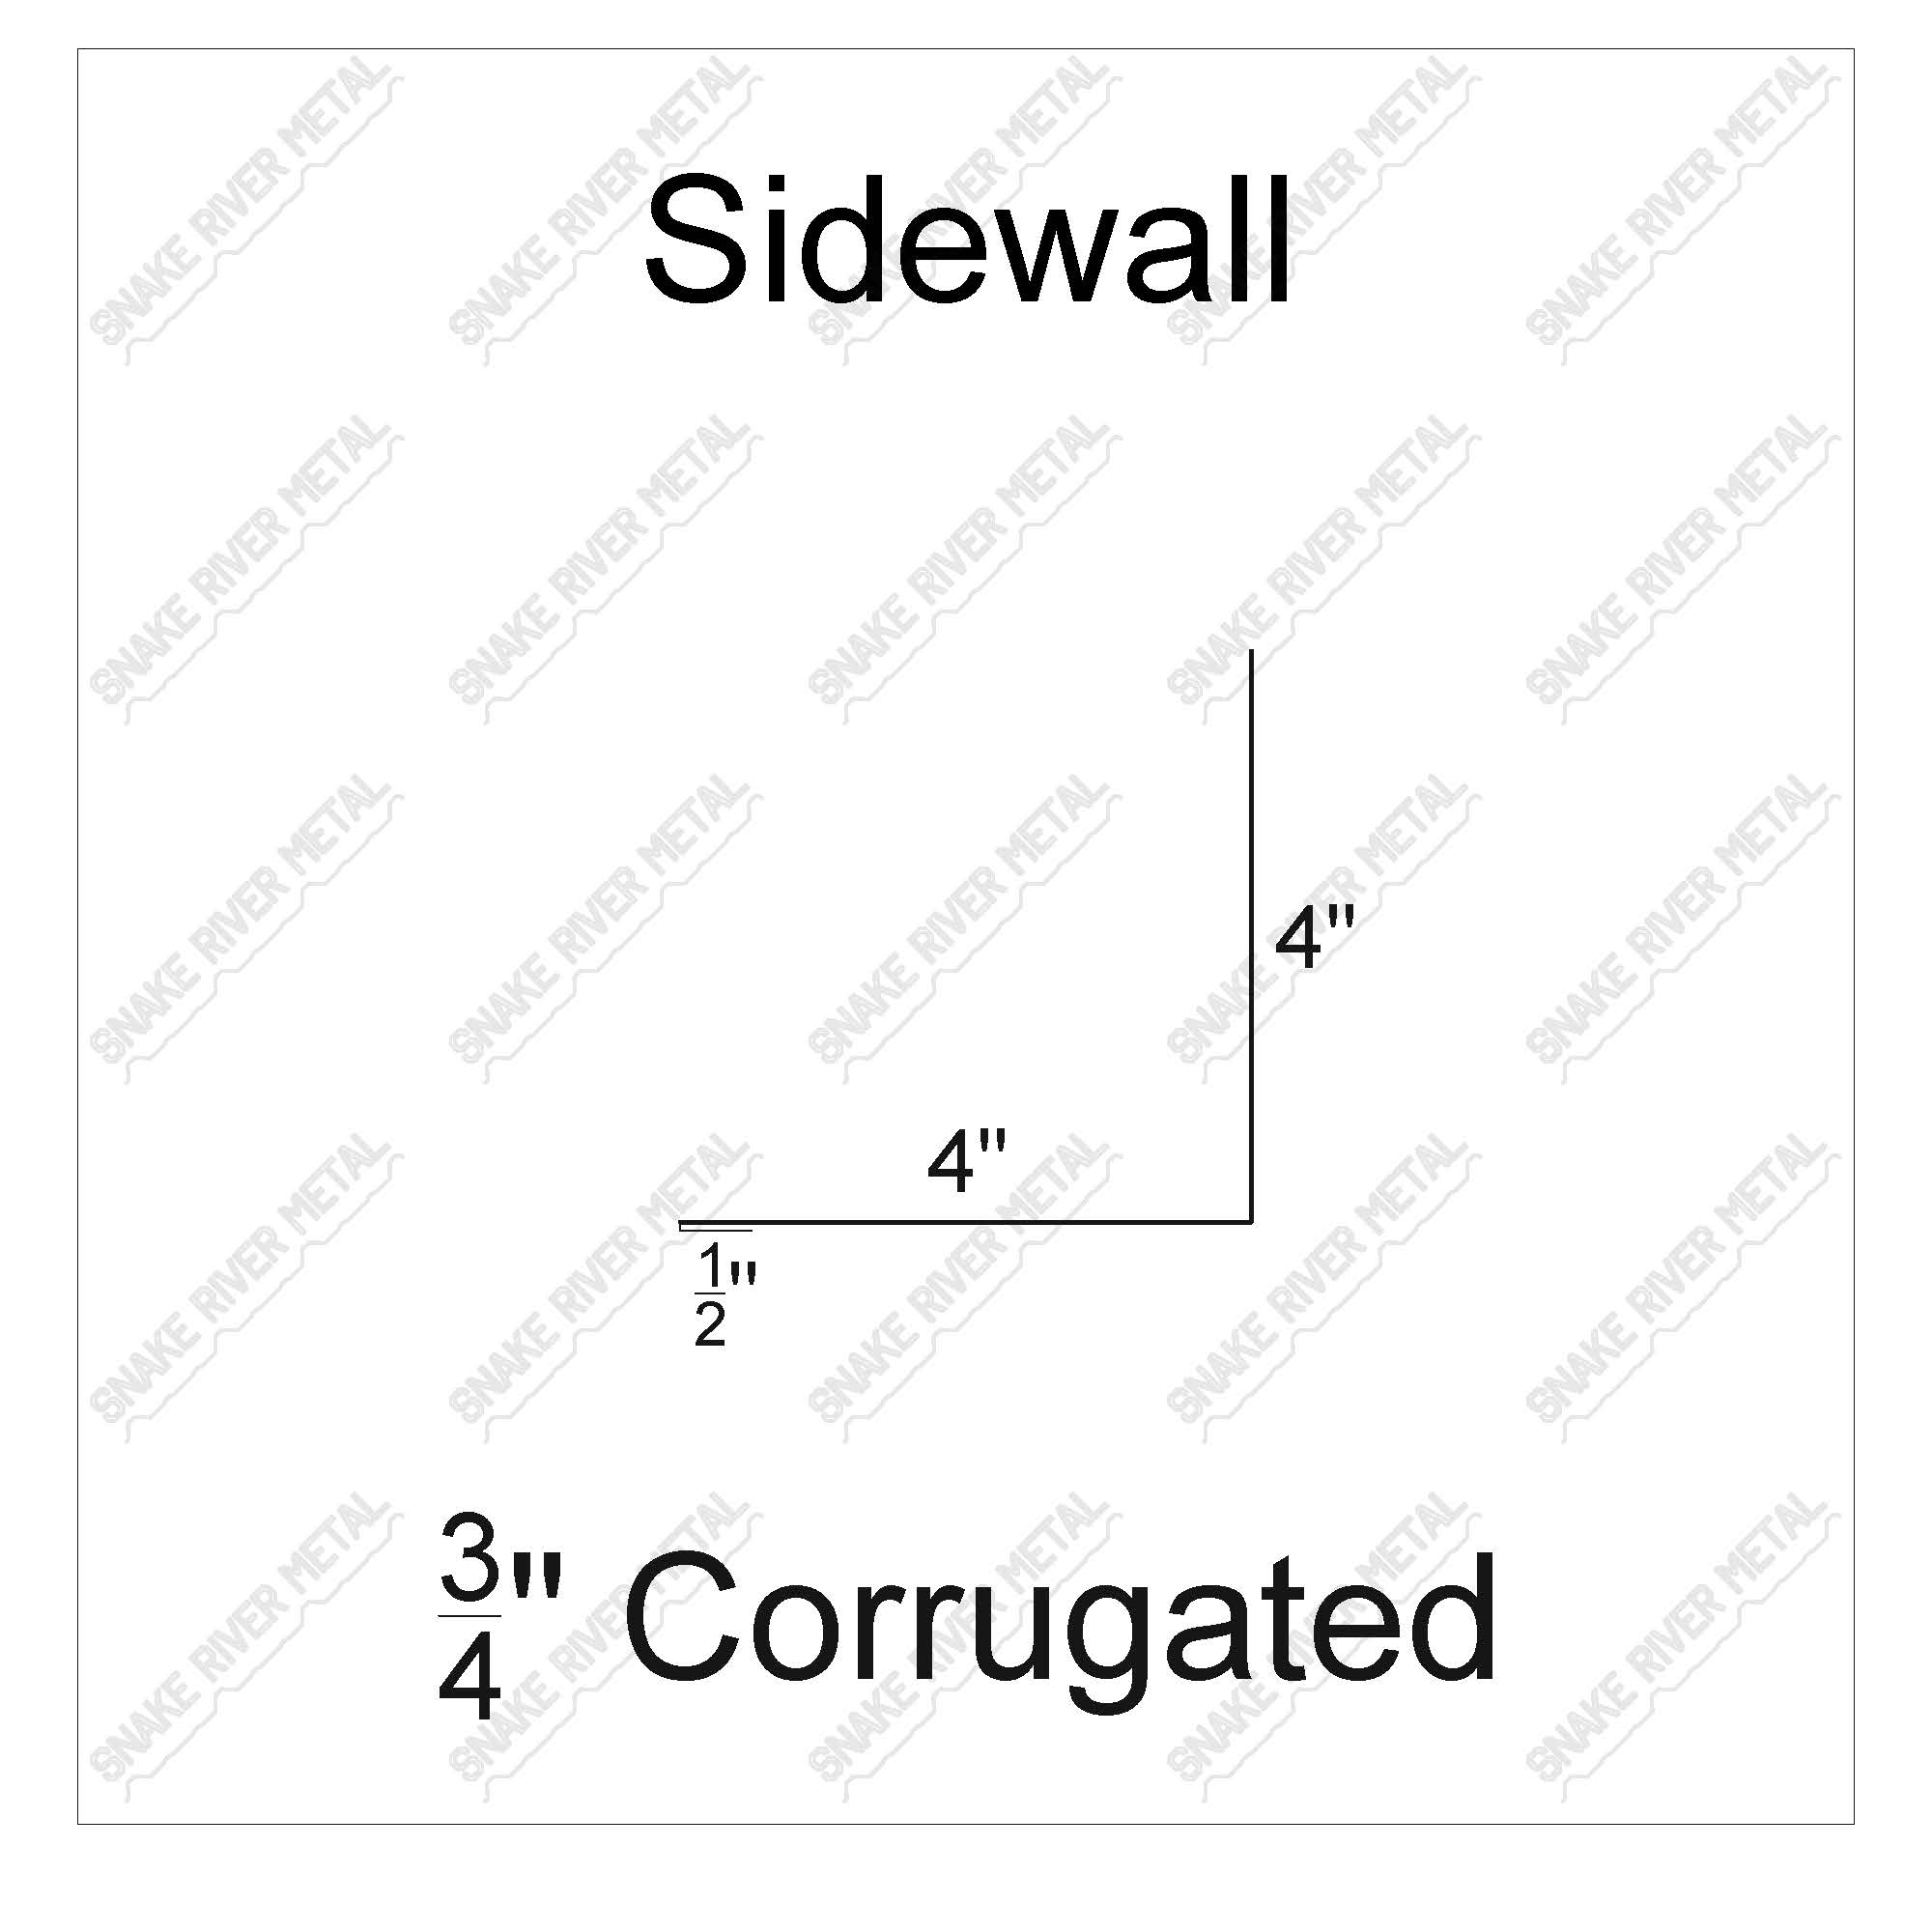 Sidewall - Corrugated Trim